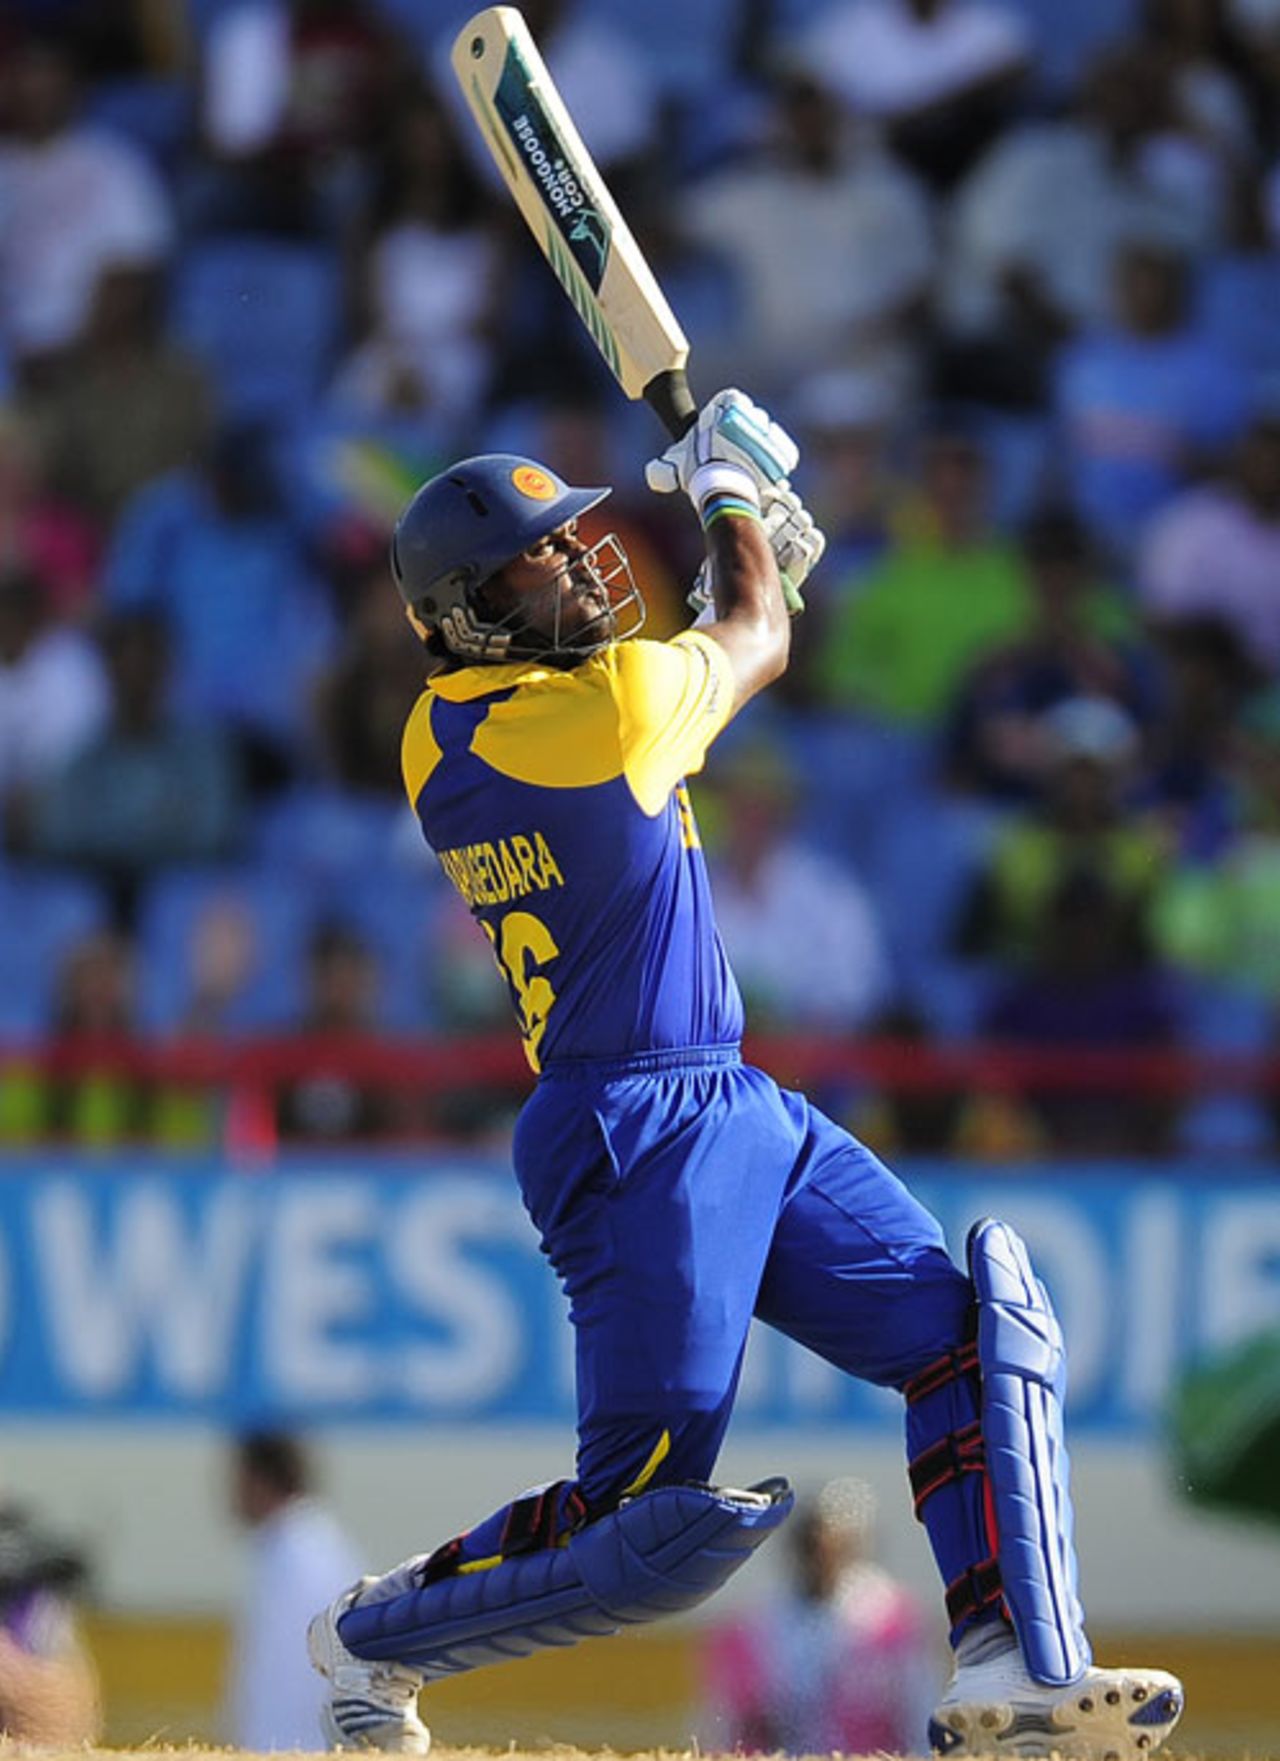 Chamara Kapugedera smashes one of his sixes, Sri Lanka v India, Group F, World Twenty20, St Lucia, May 11, 2010